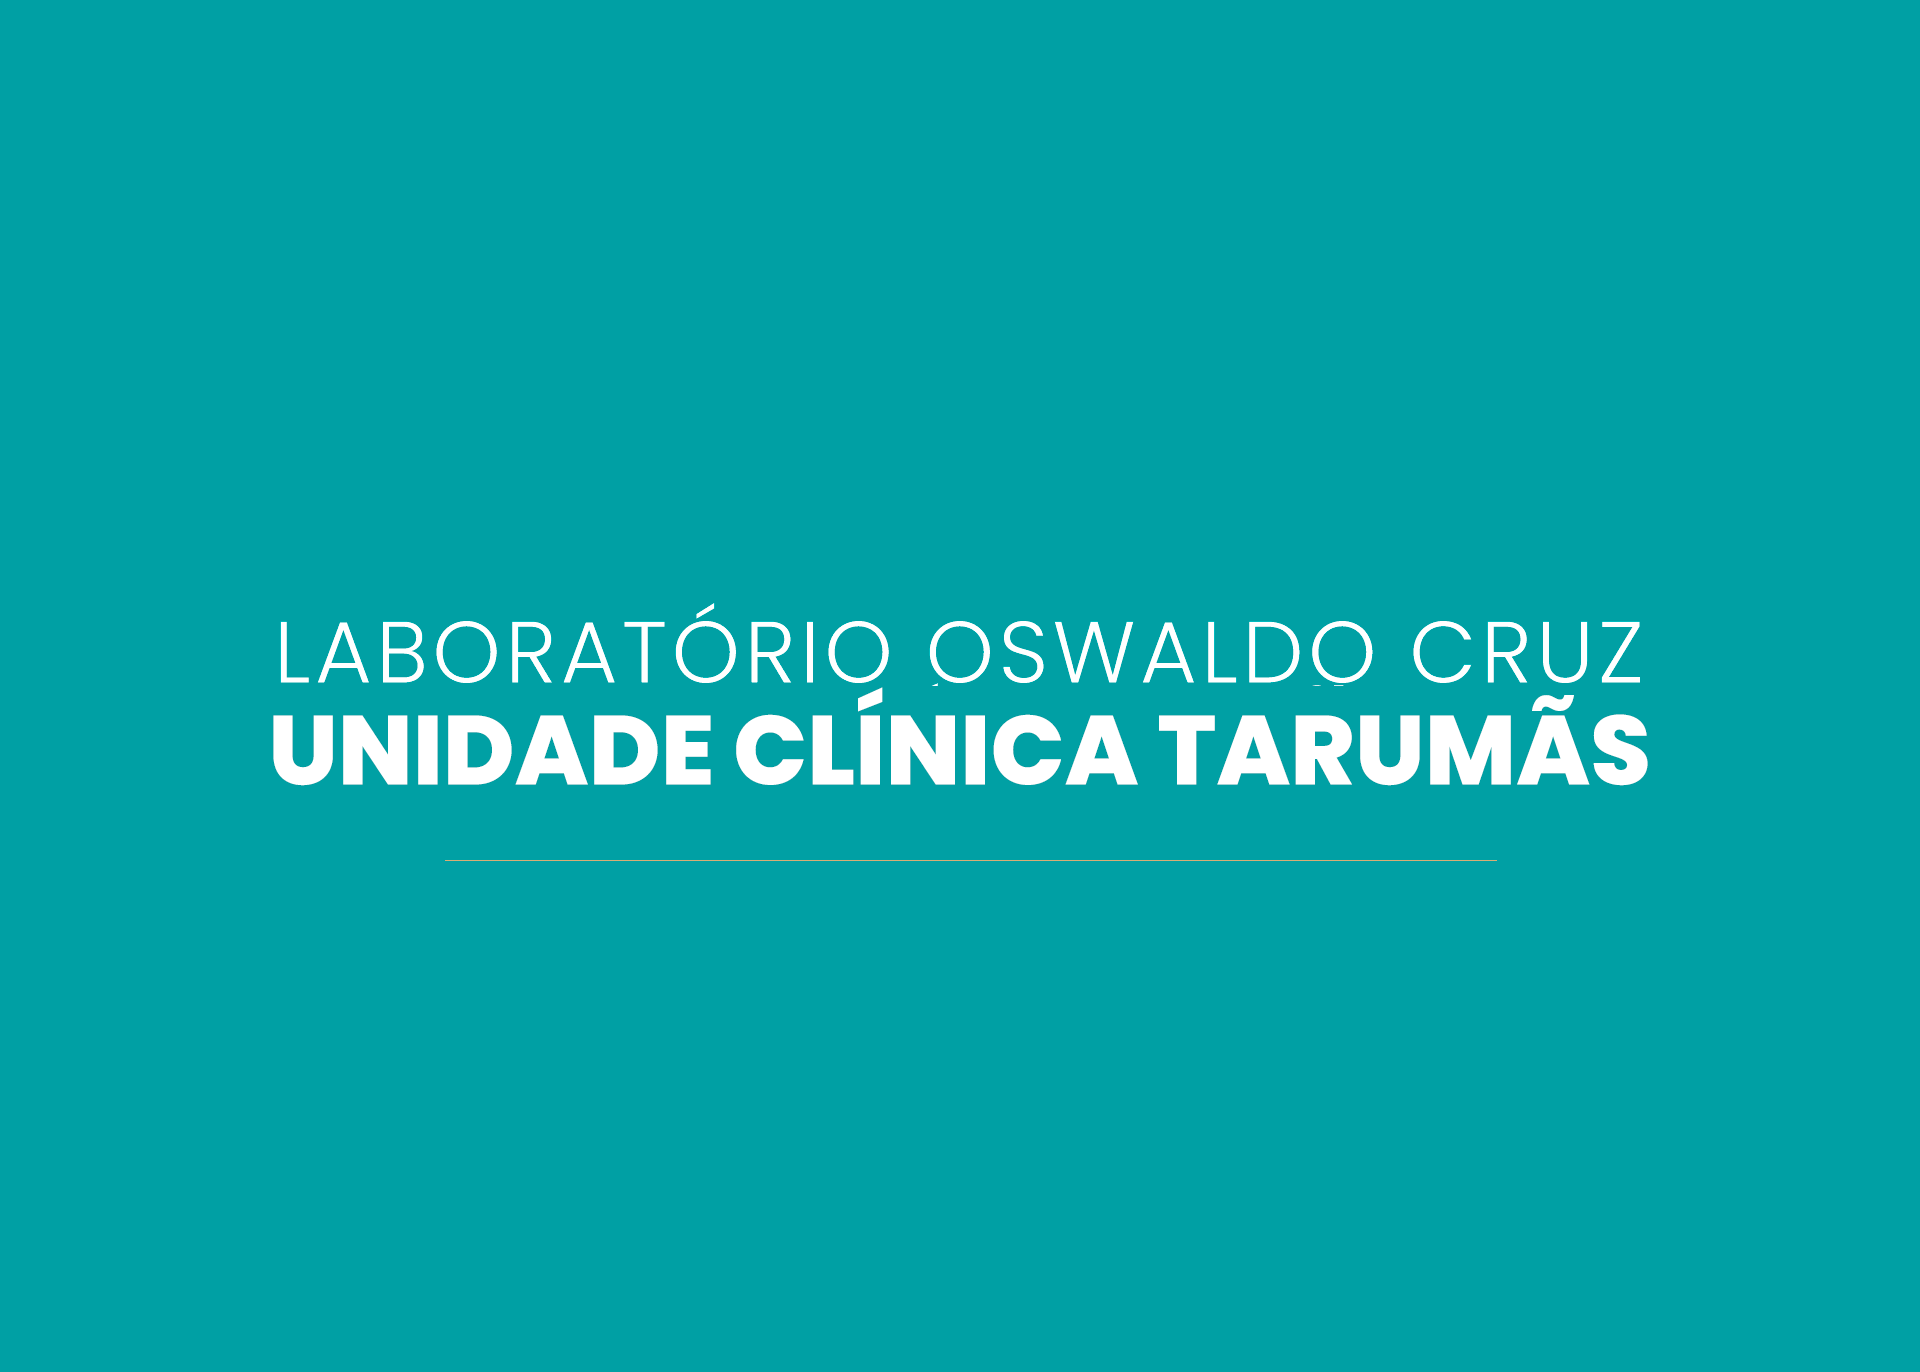 Laboratório Oswaldo Cruz - Unidade Clínica Tarumãs